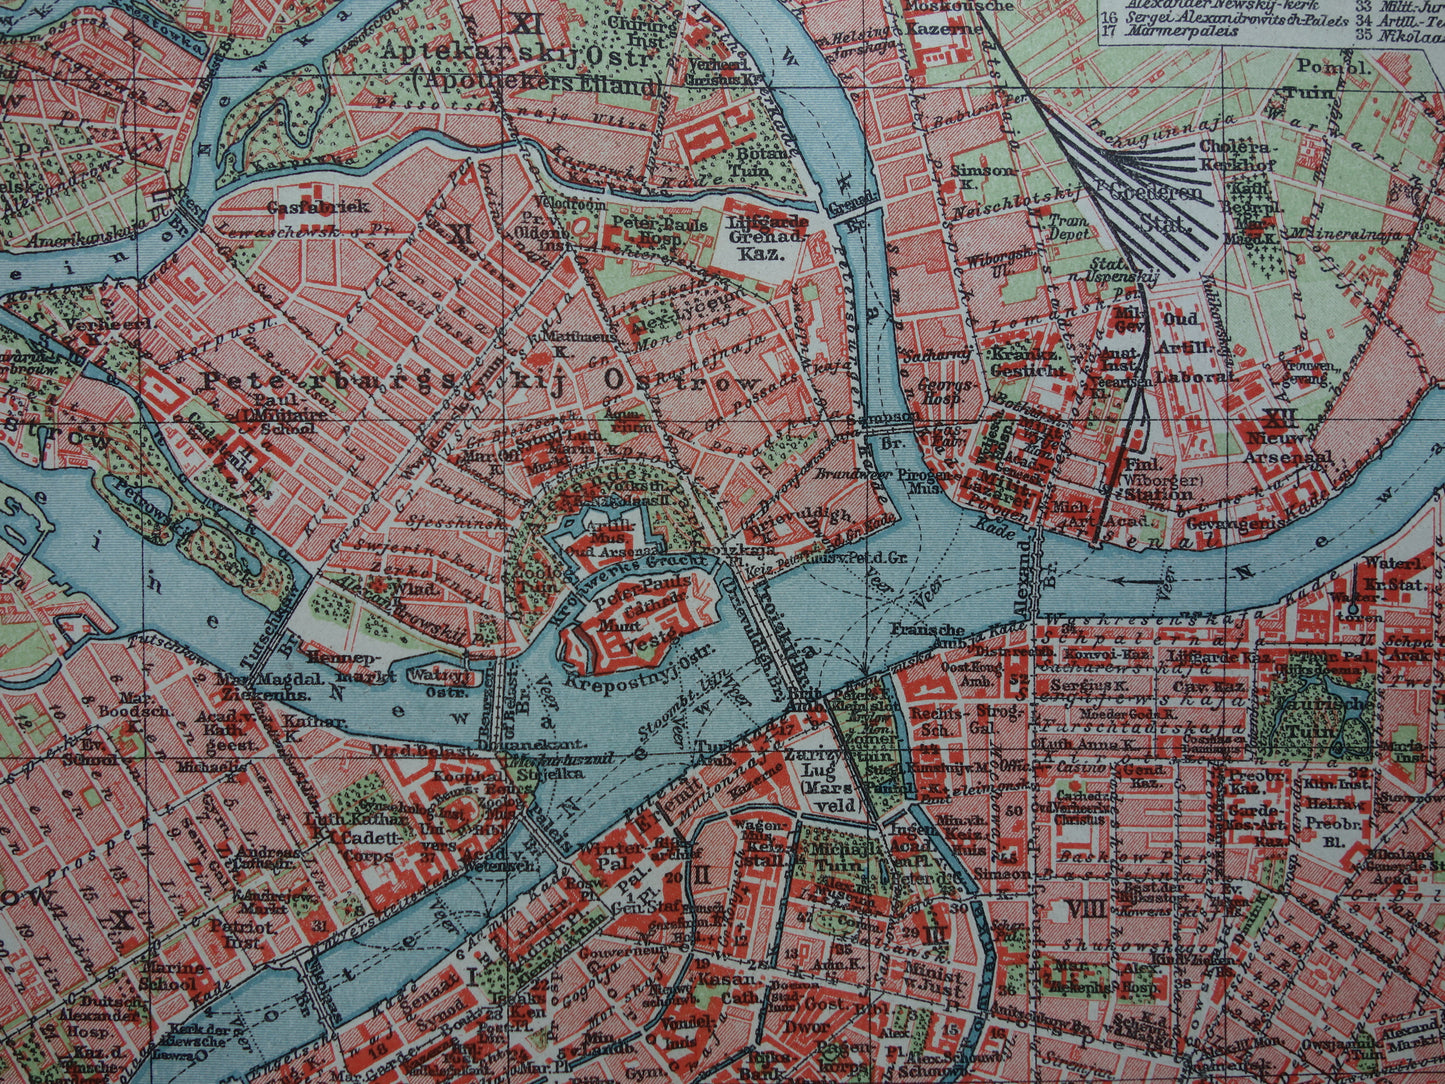 St Petersburg oude plattegrond Originele antieke Nederlandse kaart van Sint Petersburg Rusland uit 1921 vintage historische kaarten